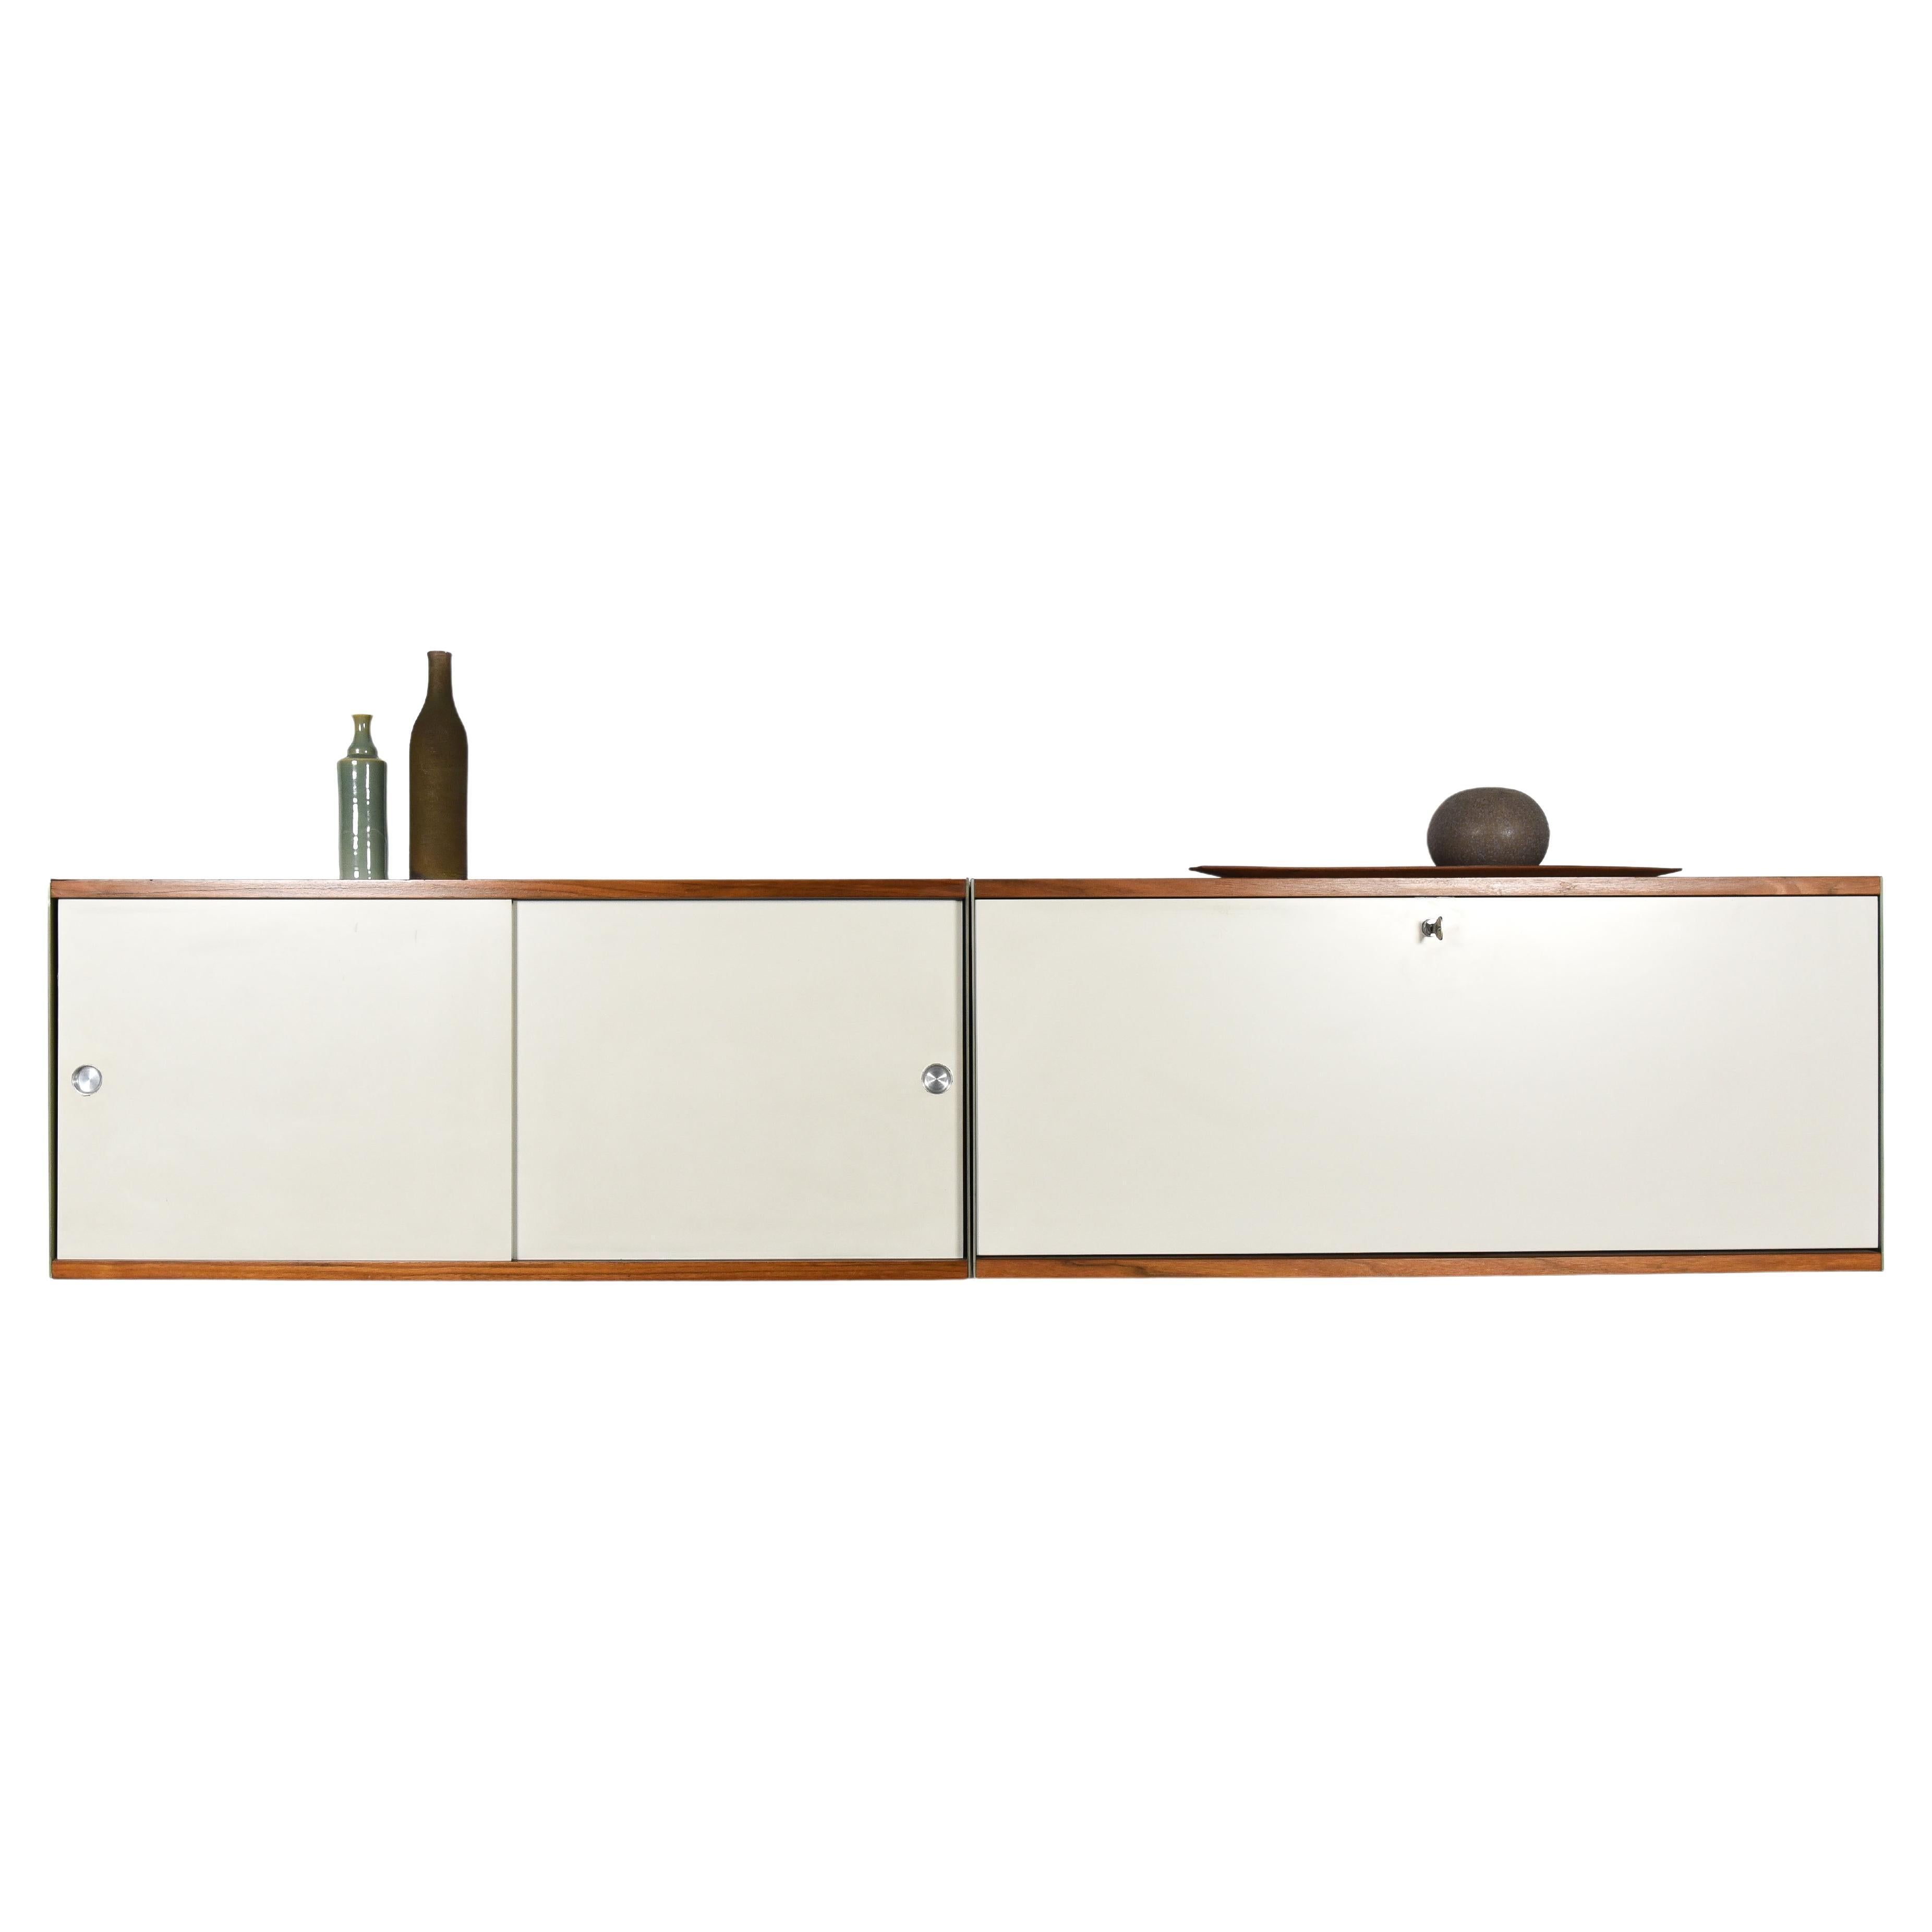 Le système d'étagères modulaires 606 est un classique absolu du design, conçu par Dieter Rams en 1960 pour Vitsoe. Variante extrêmement rare avec des étagères en bois de teck et des façades blanc cassé.
Le buffet date des années 1960 et est en très